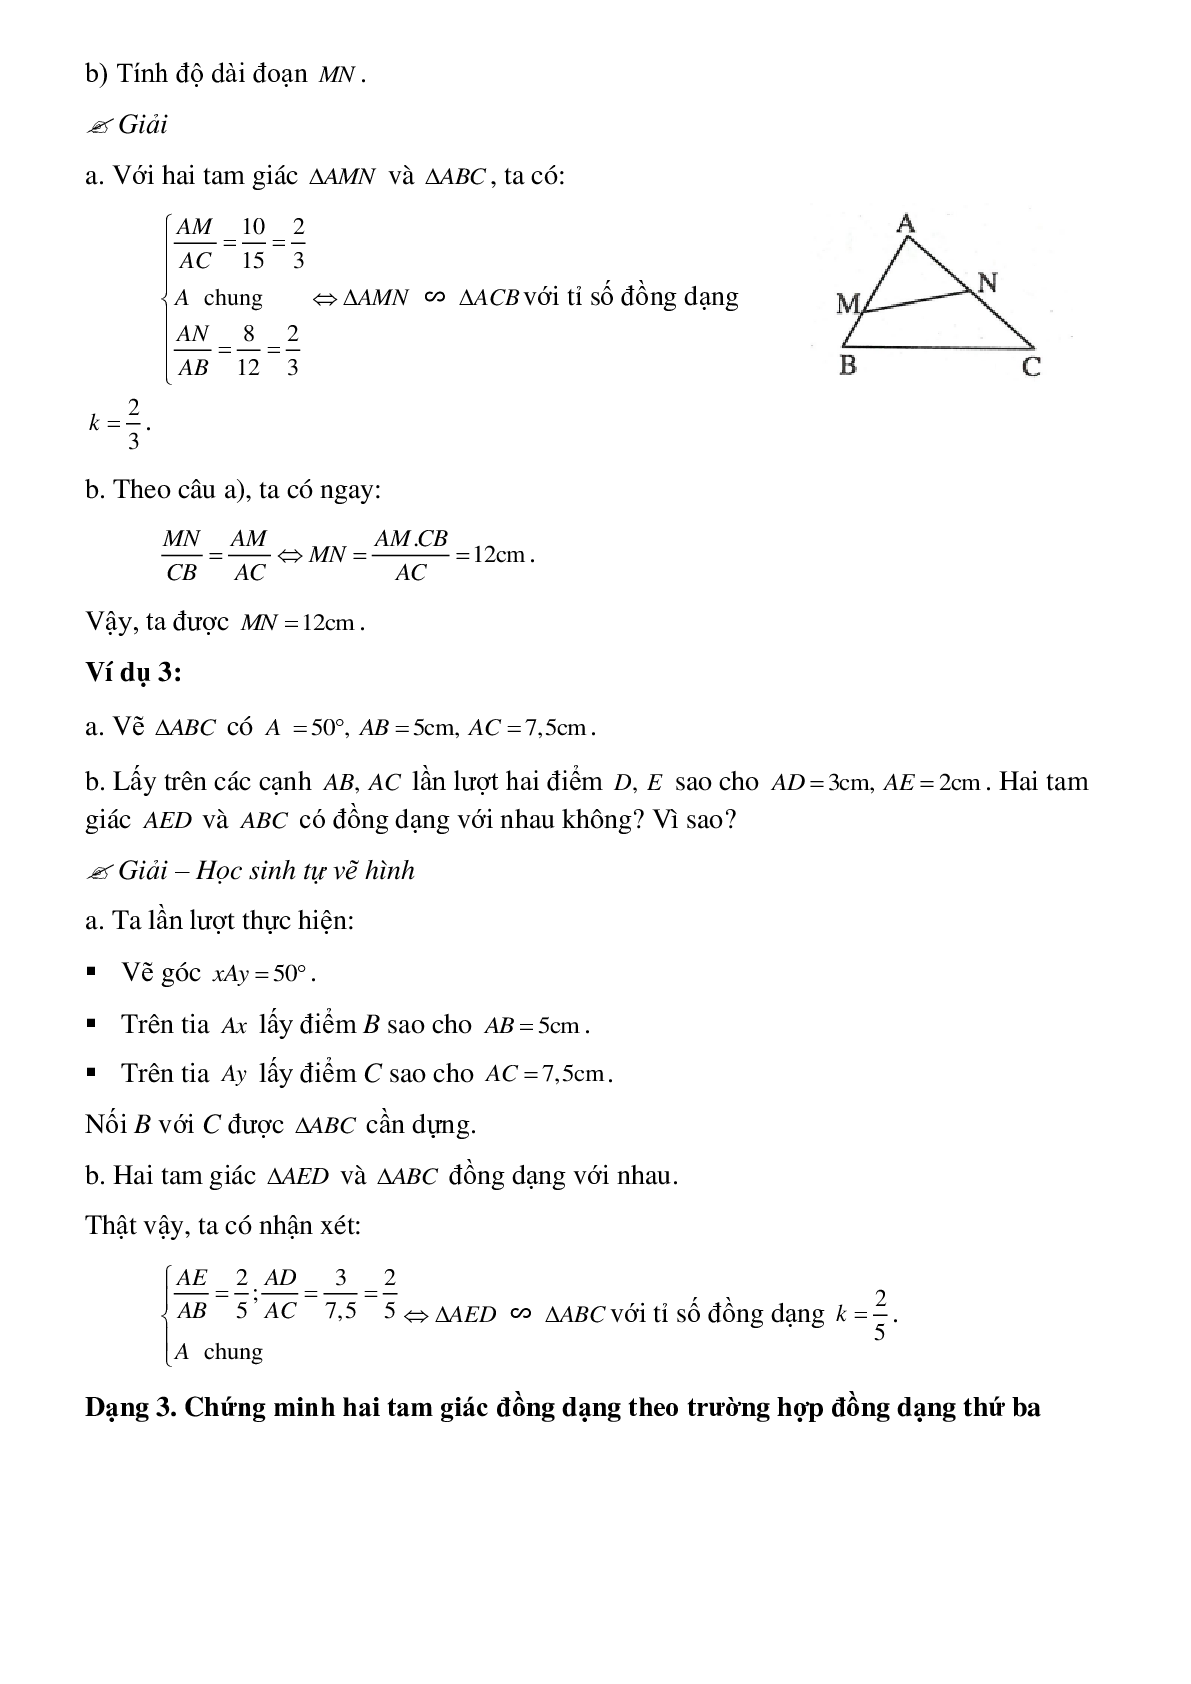 Phương pháp giải chi tiết, bài tập về Chứng minh hai tam giác đồng dạng chọn lọc (trang 4)